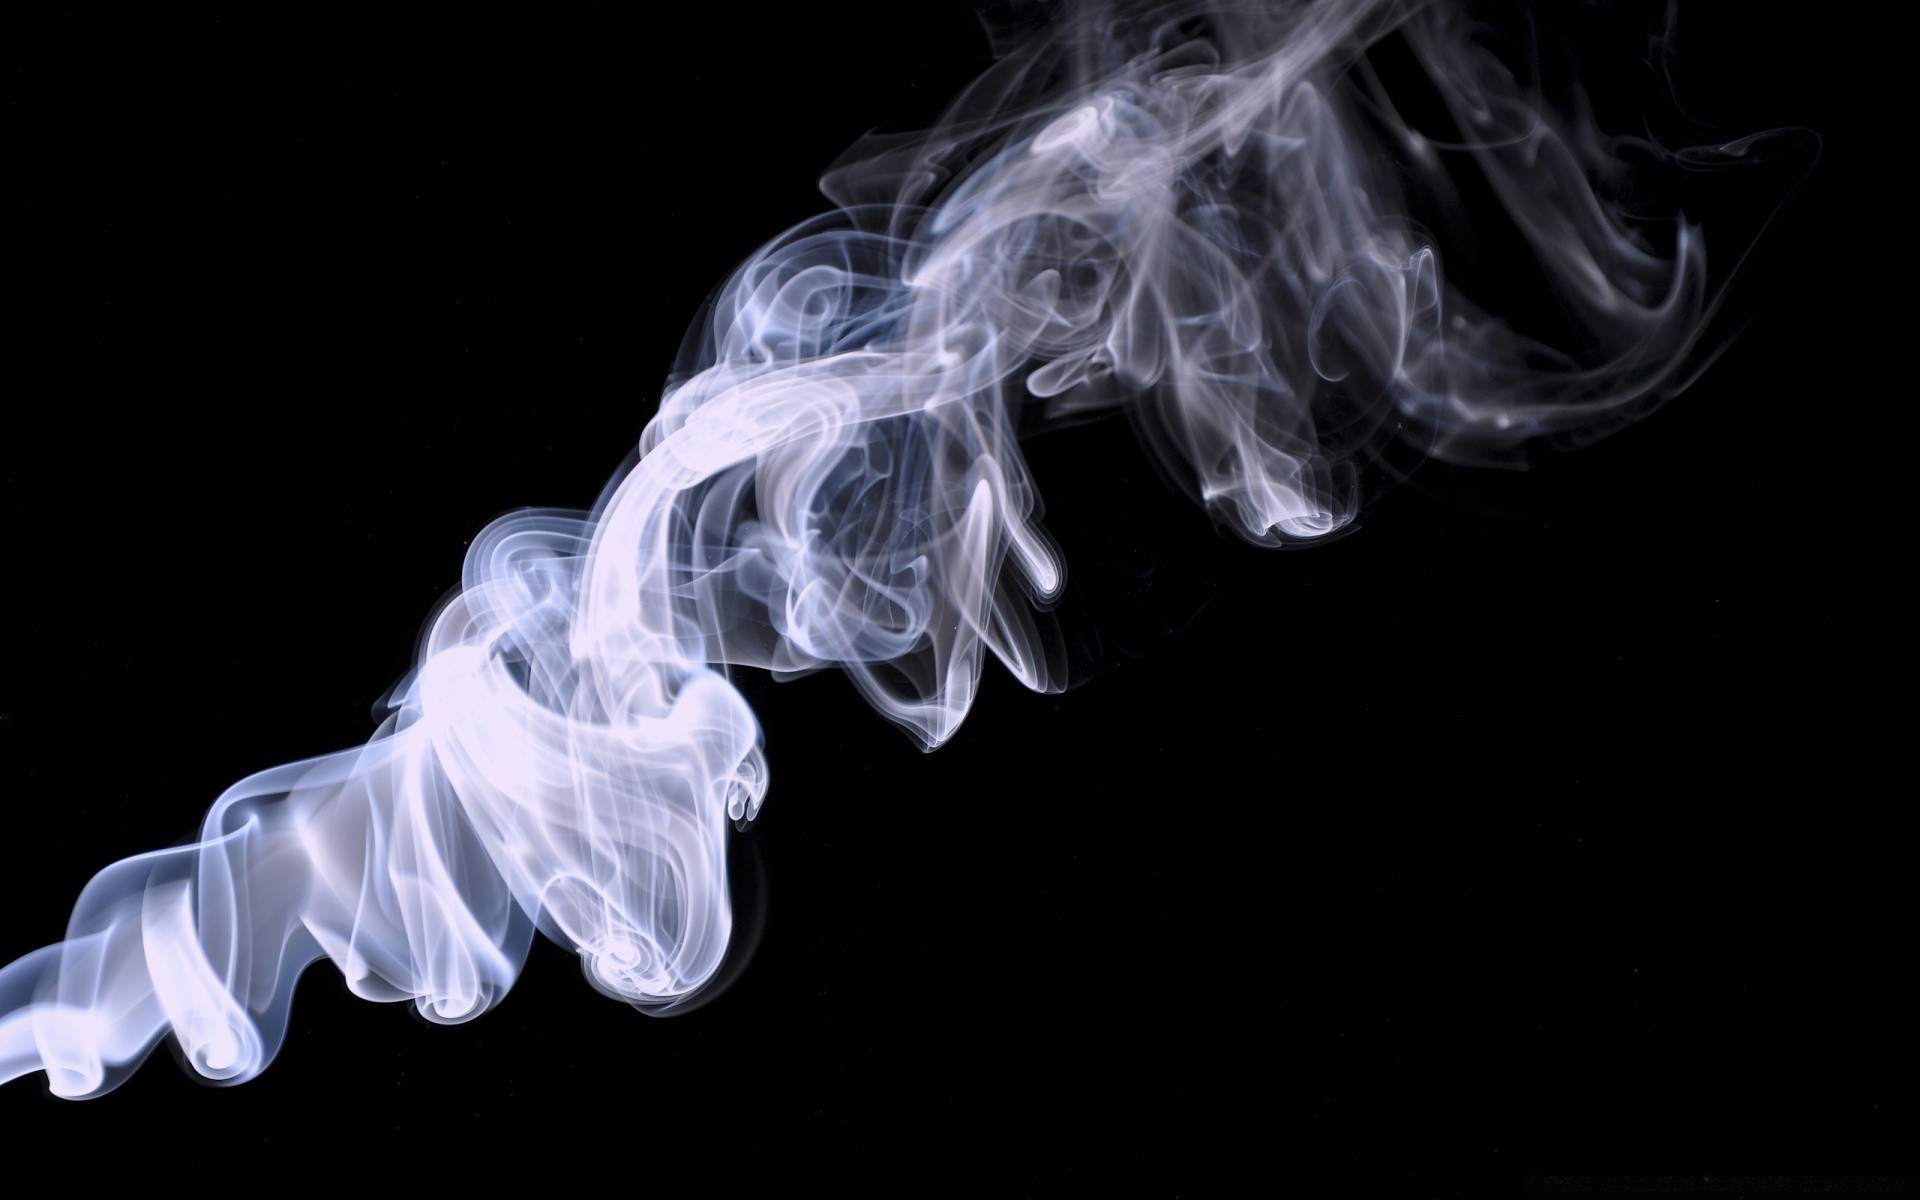 черное дым фимиам туман пара динамические пламя сожгли волна нежный кривая слик движения духи запах сжечь магия след гладкая аннотация таинственный